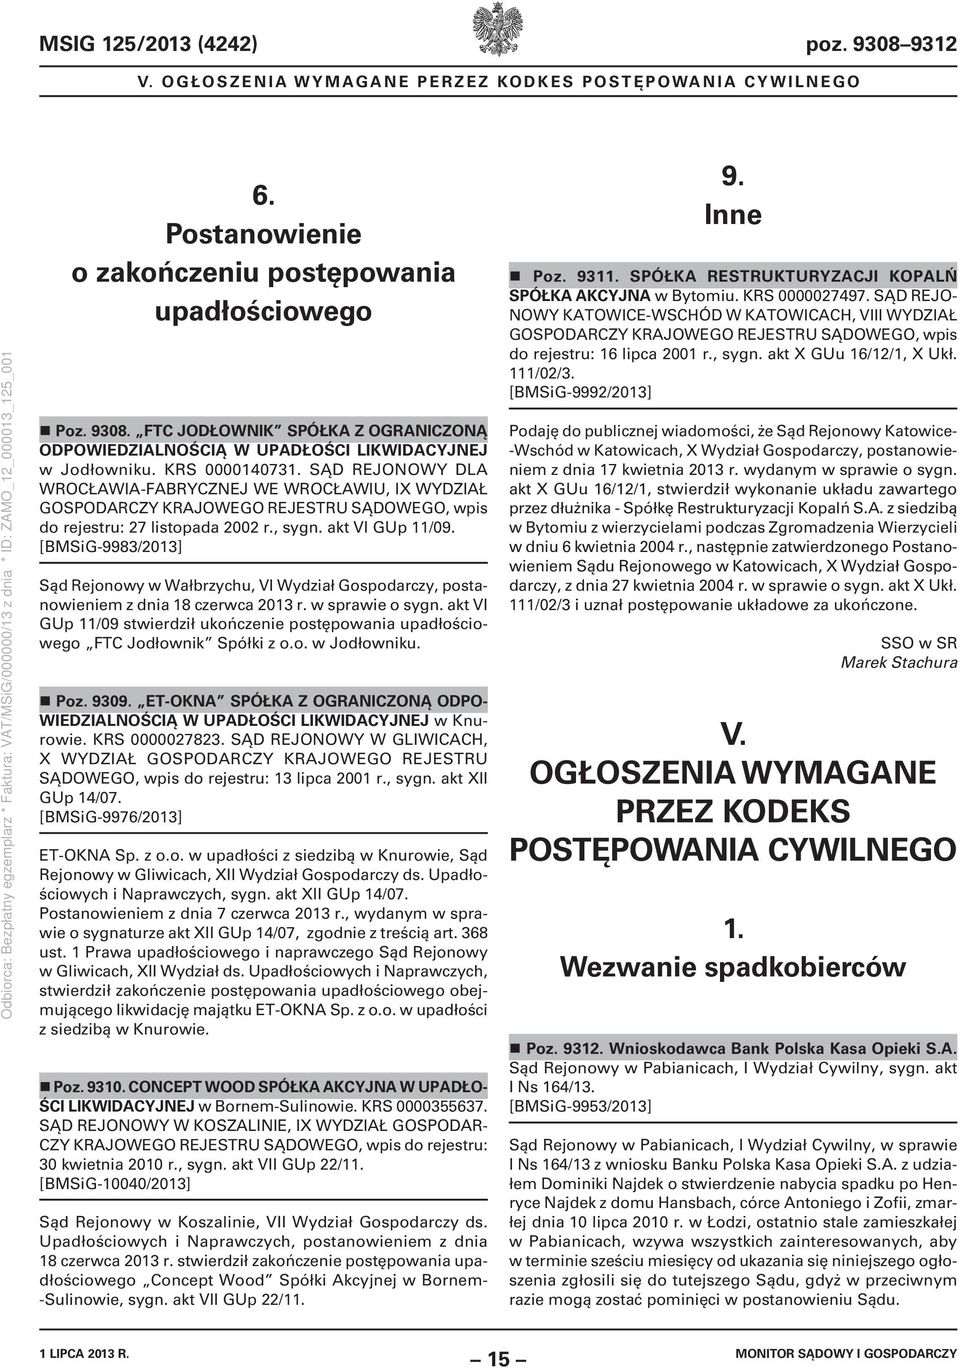 [BMSiG9983/2013] Sąd Rejonowy w Wałbrzychu, VI Wydział Gospodarczy, postanowieniem z dnia 18 czerwca 2013 r. w sprawie o sygn.